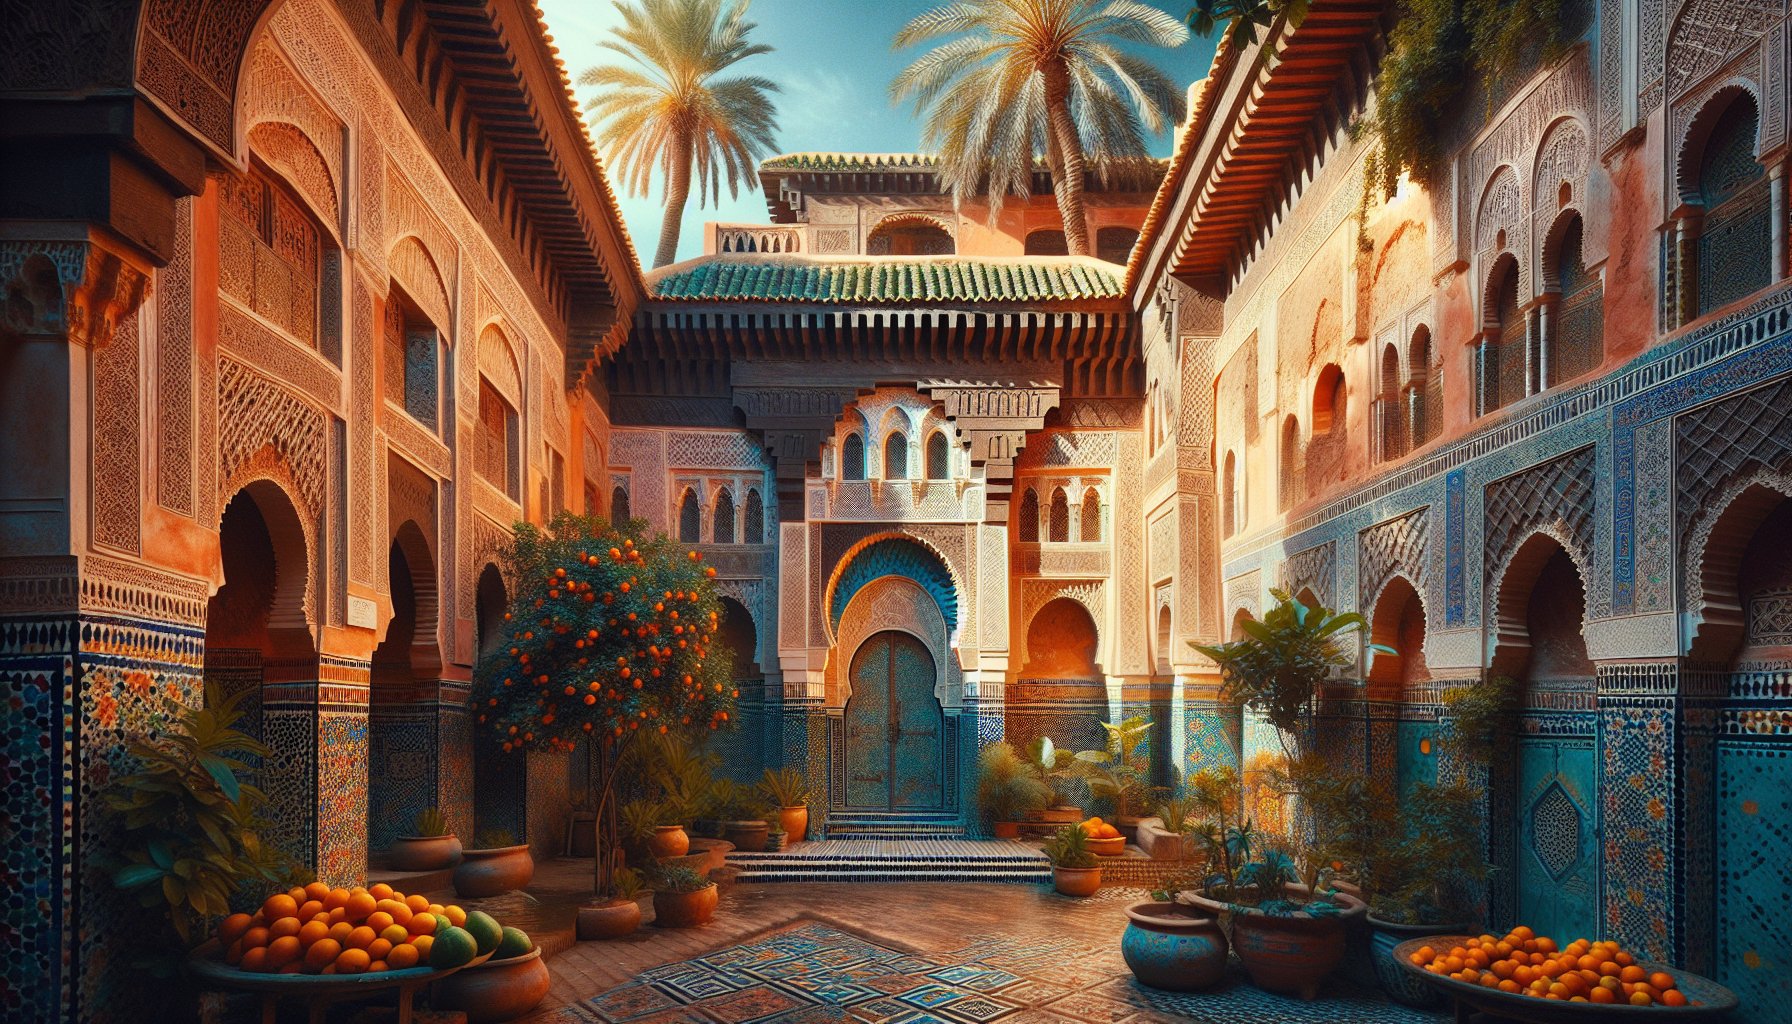 découvrez le palais de marrakech, véritable joyau de la culture marocaine, à travers ses jardins luxuriants, ses mosaïques envoûtantes et son architecture impressionnante.